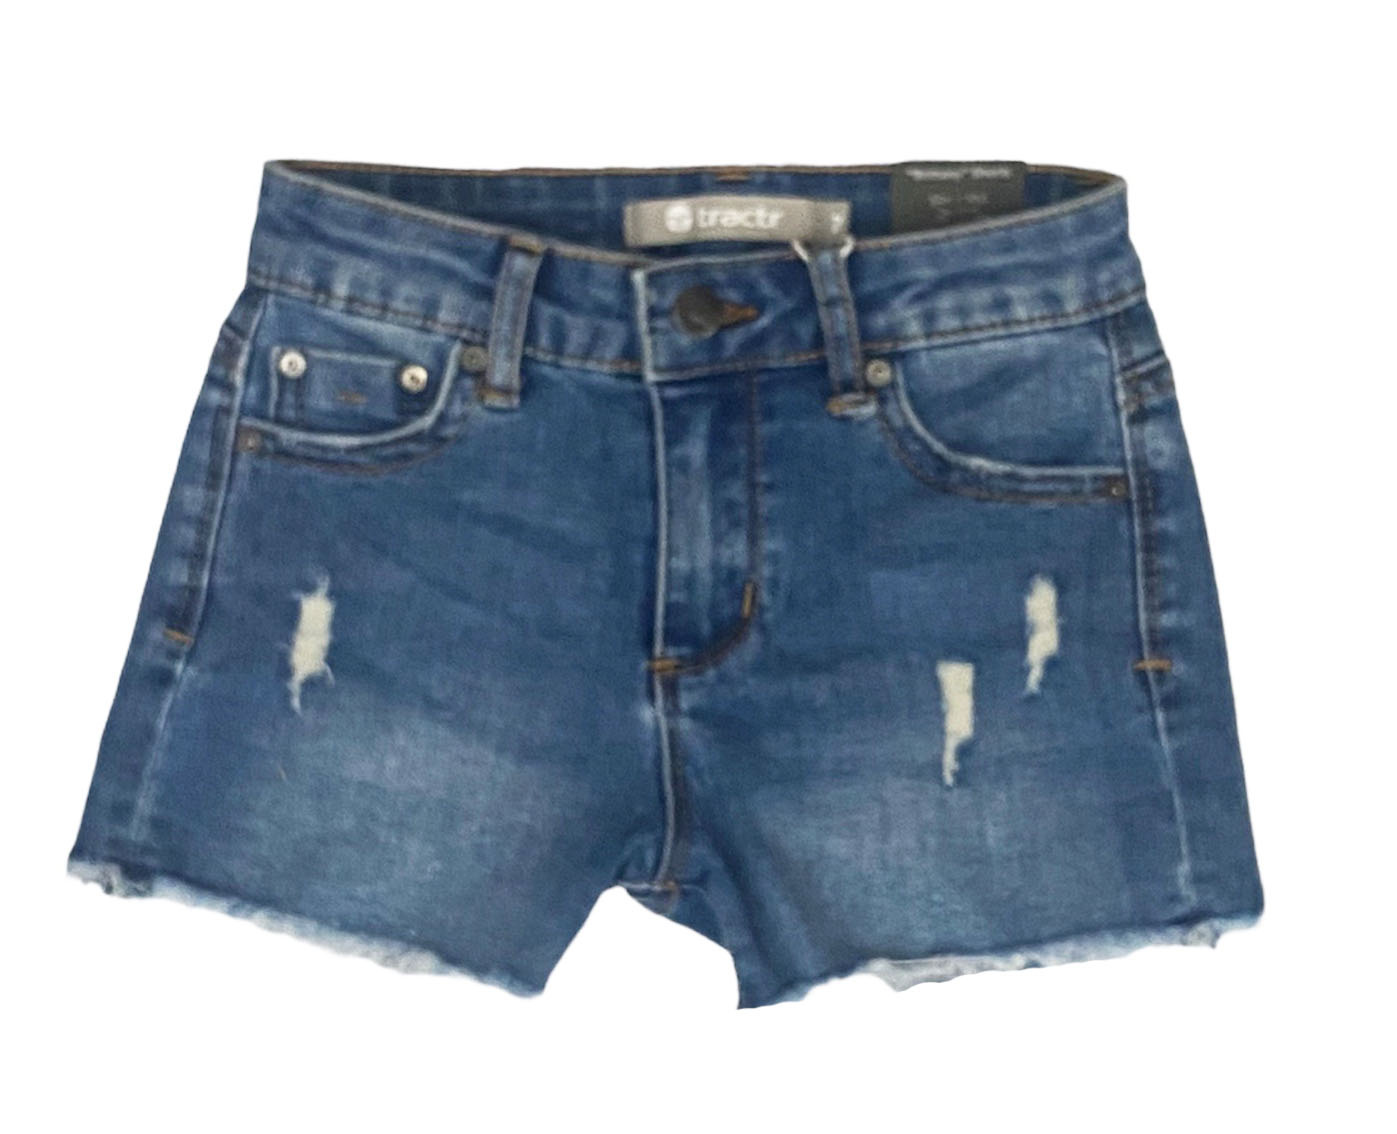 Tractr Brittany Distressed Denim Cutoff Shorts